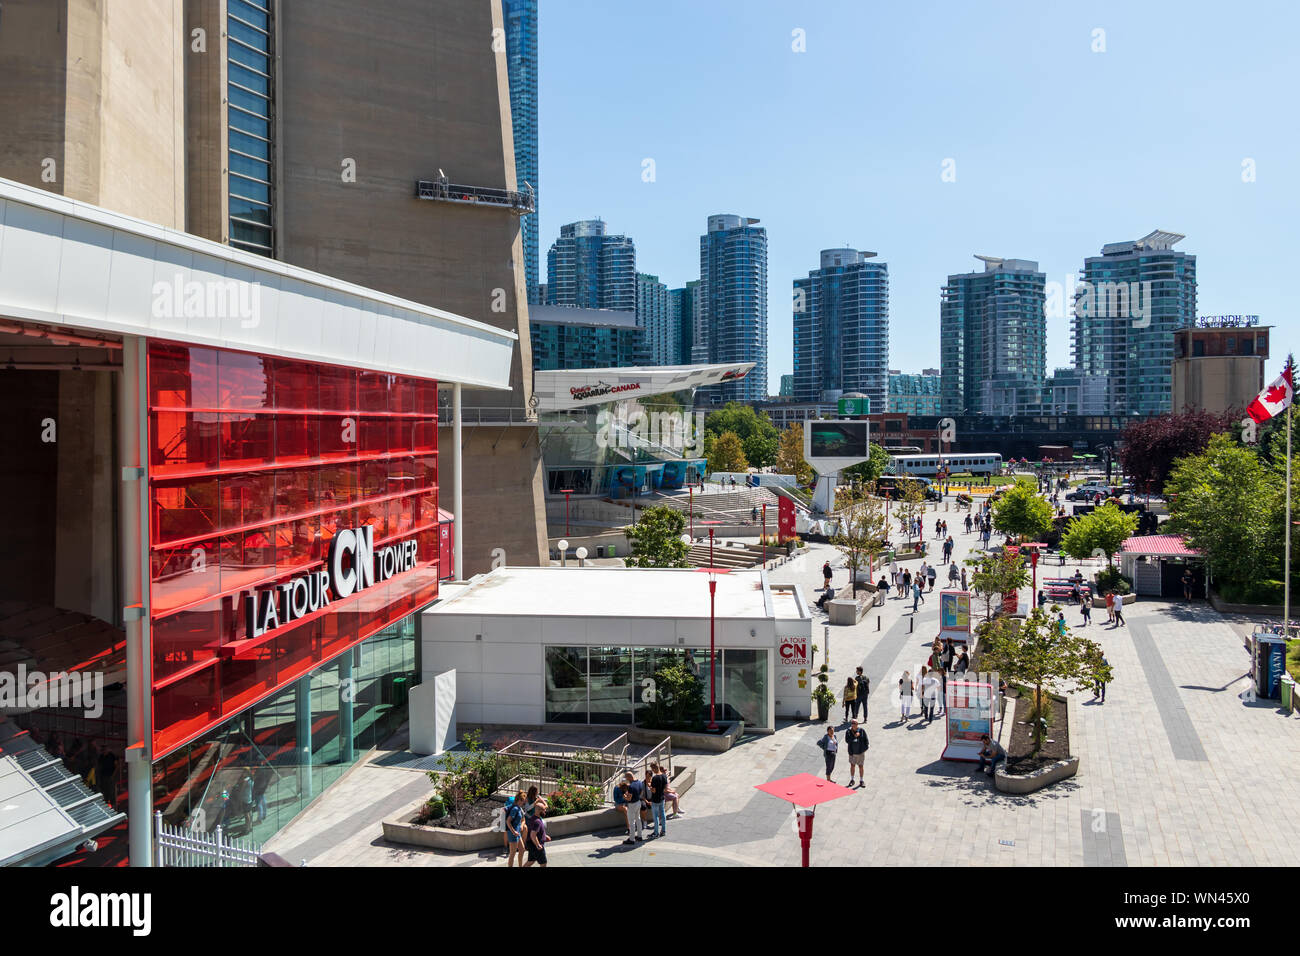 Ingresso della CN Tower e dintorni Plaza con Ripley's acquario del Canada in background. Foto Stock